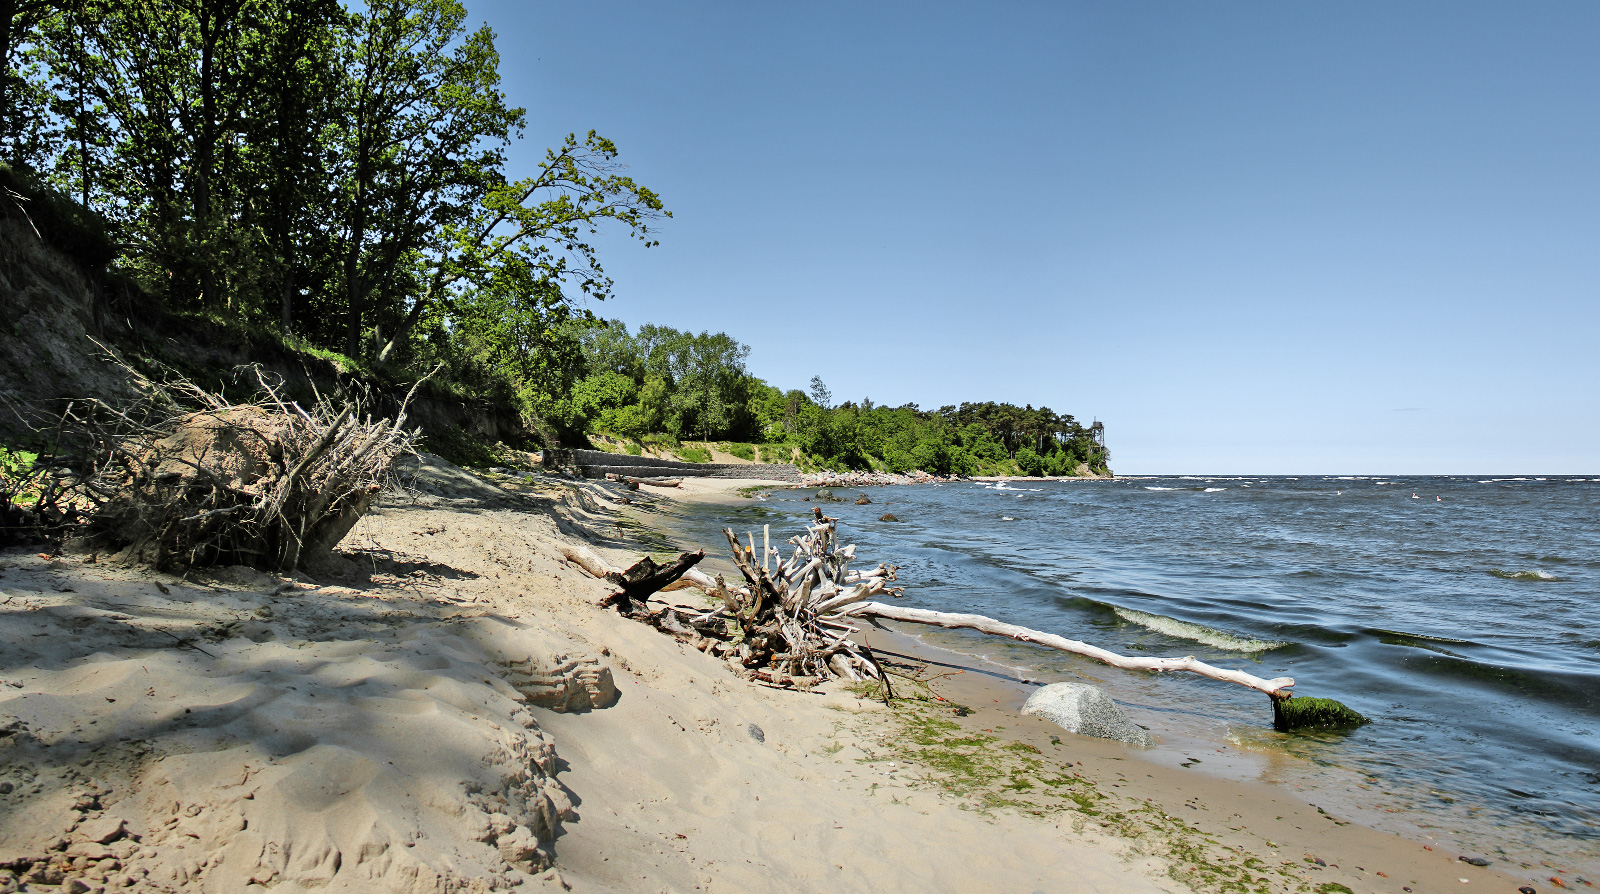 Φωτογραφία του Gvargeiiskiy beach με μακρά ευθεία ακτή